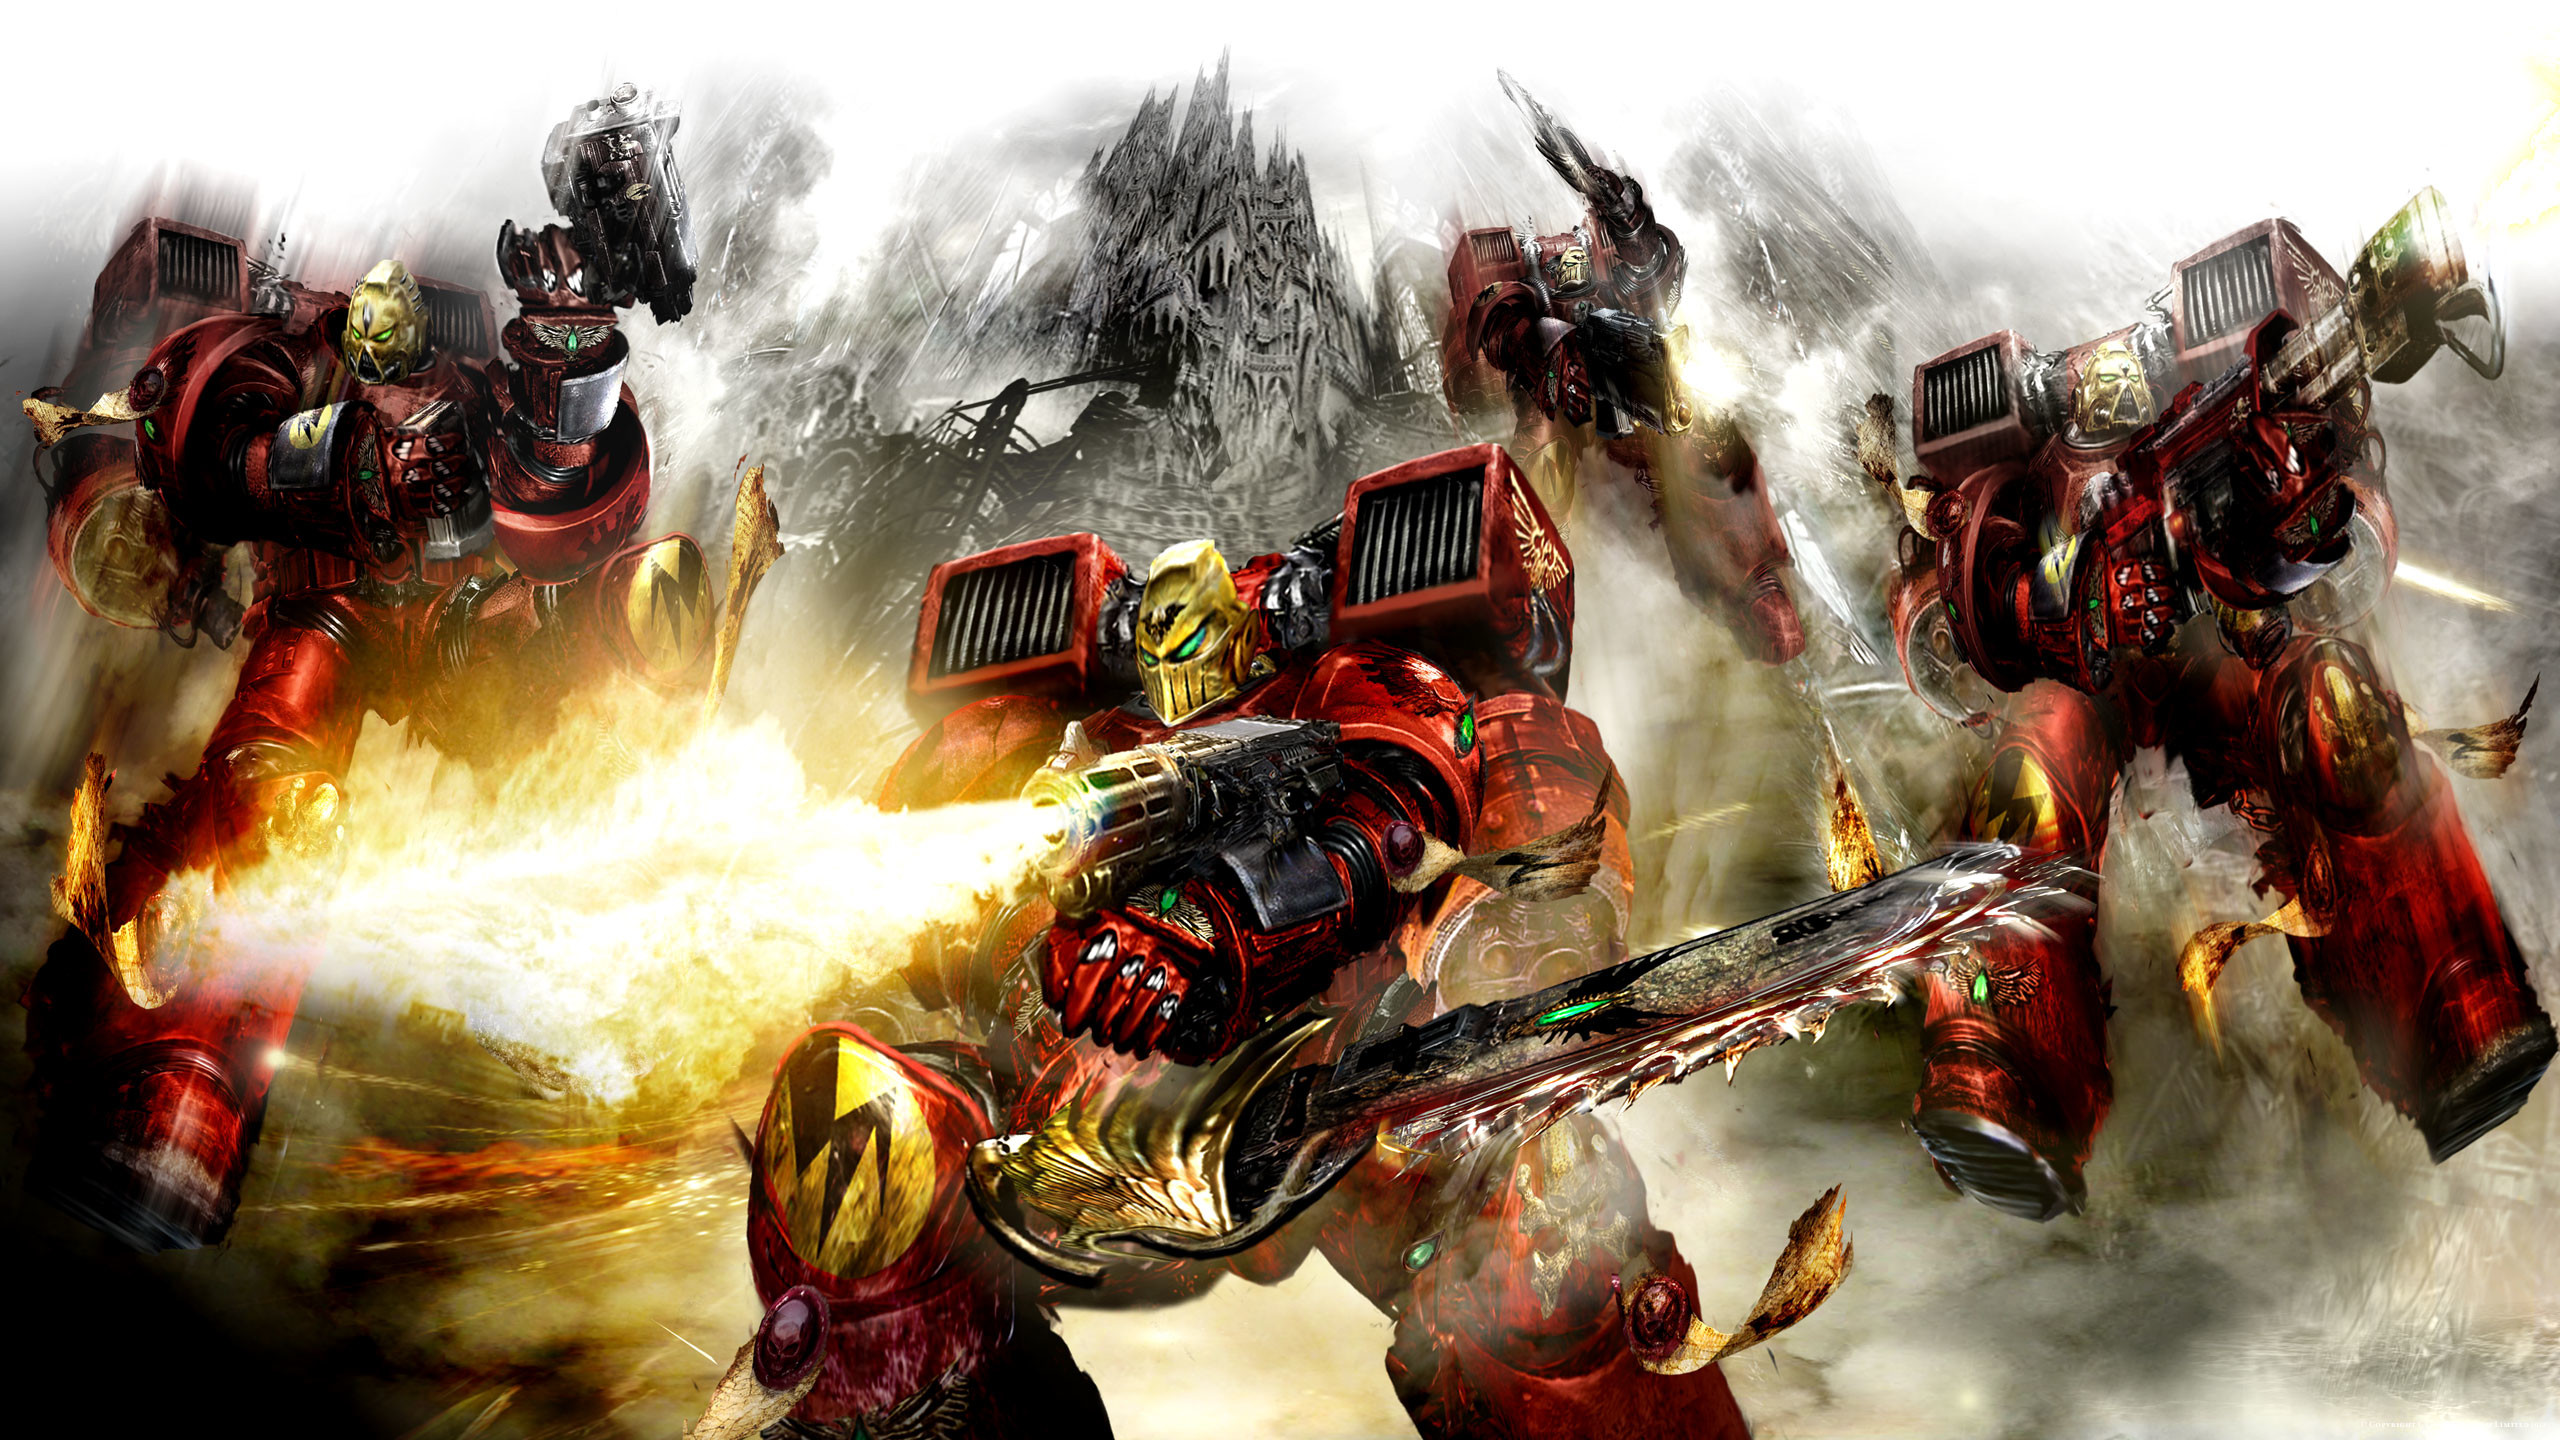 2560x1440 Warhammer 40k Space Marine Legions: Day 11, Blood Angels - Album on Imgur